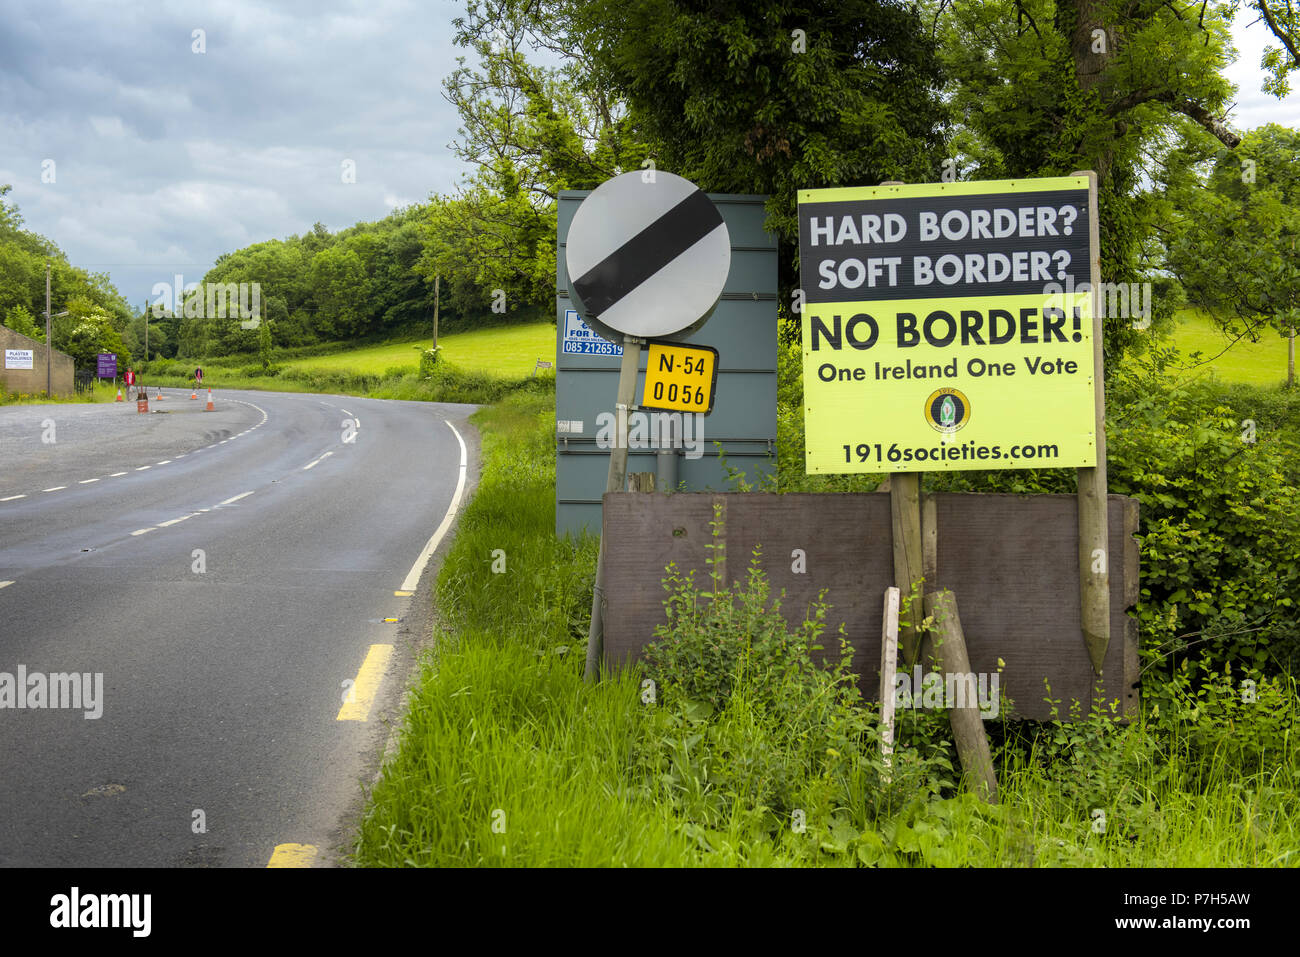 Europea di confine tra la Repubblica di Irlanda e Irlanda del Nord, che potrebbe diventare un bordo duro dopo la Brexite Foto Stock